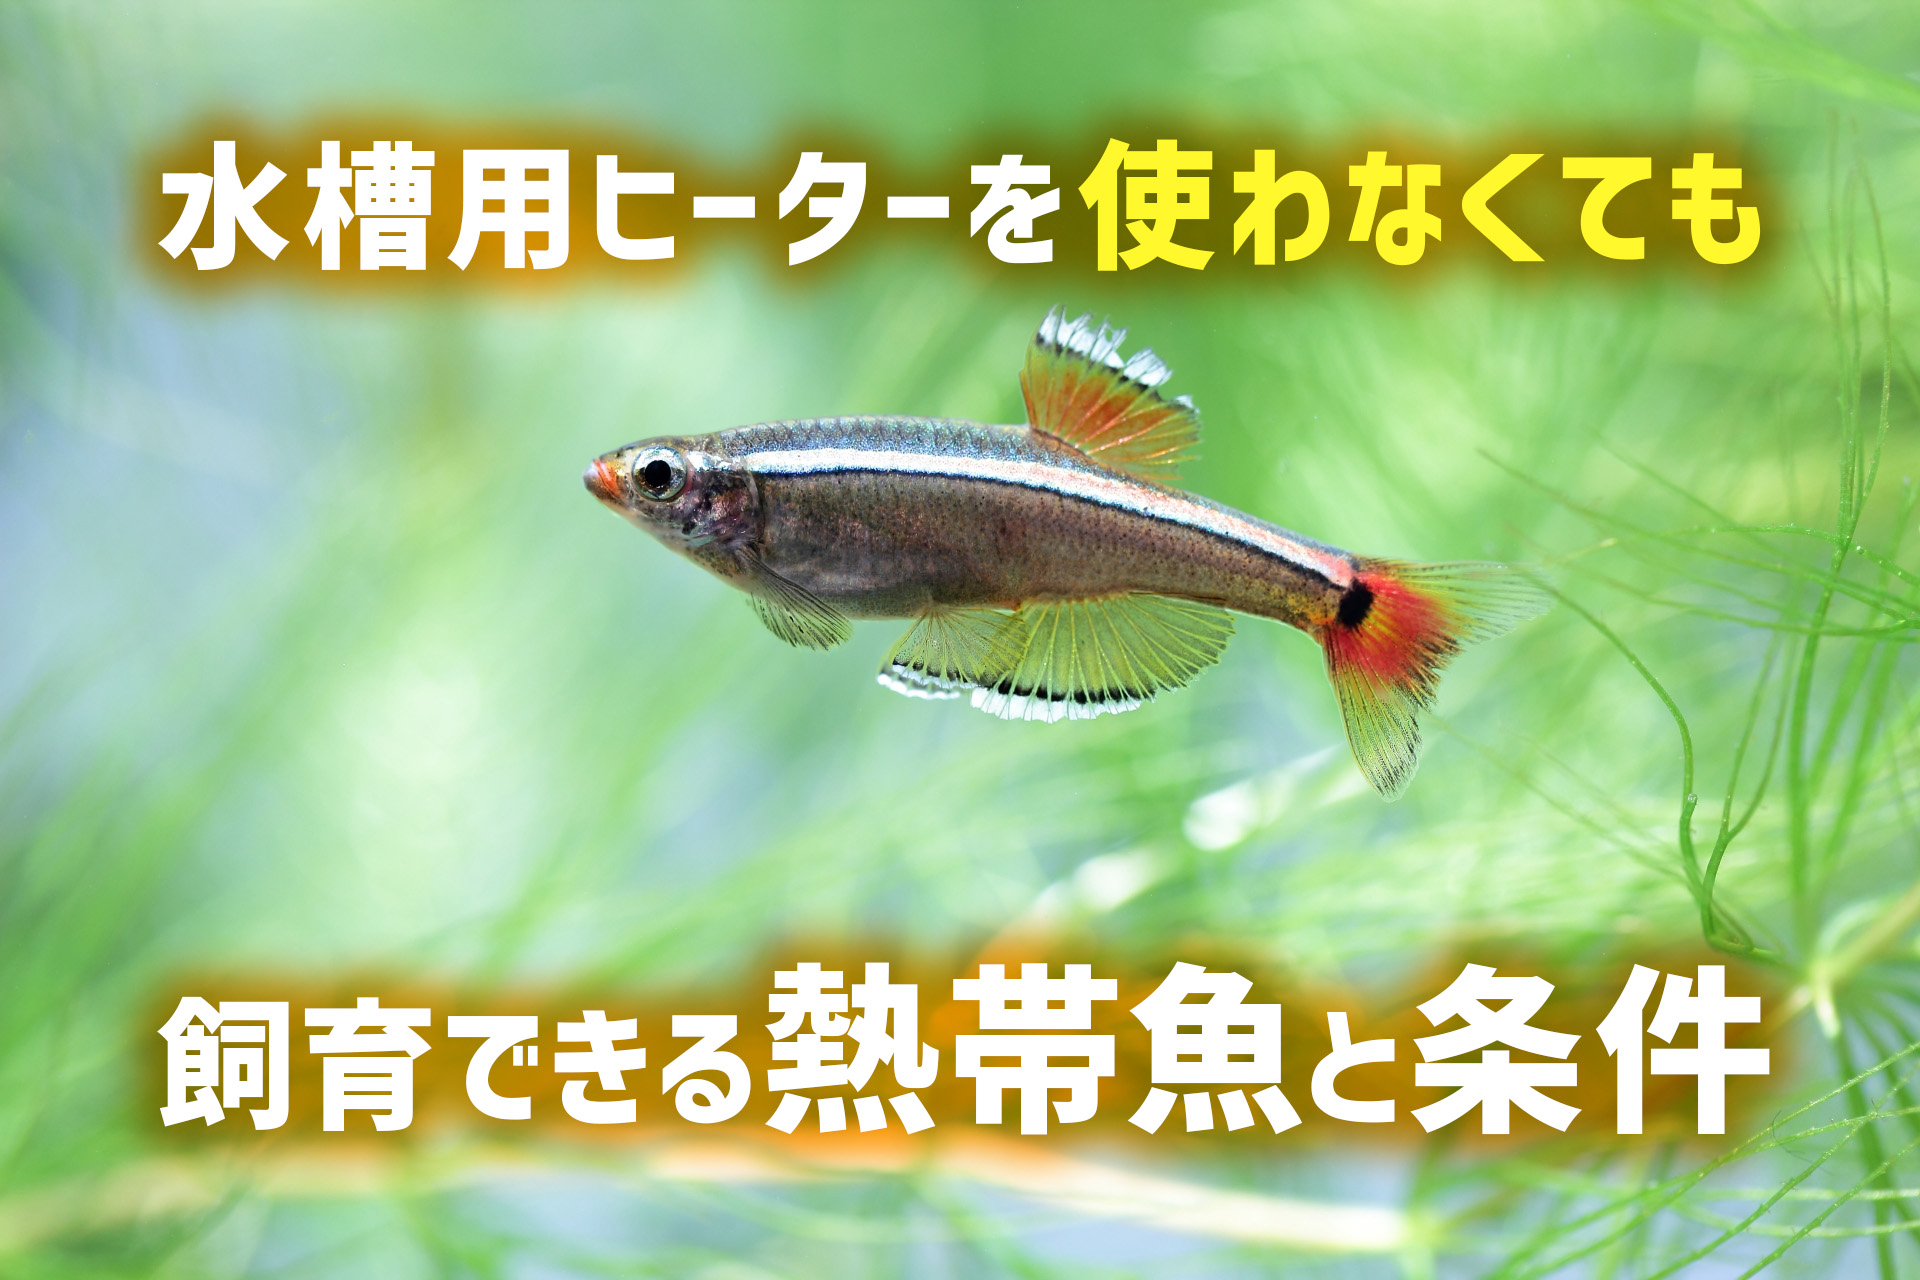 特別セーフ 熱帯魚 北海道 九州航空便要保温 ４匹 ブラッドオレンジライヤーテールモーリー